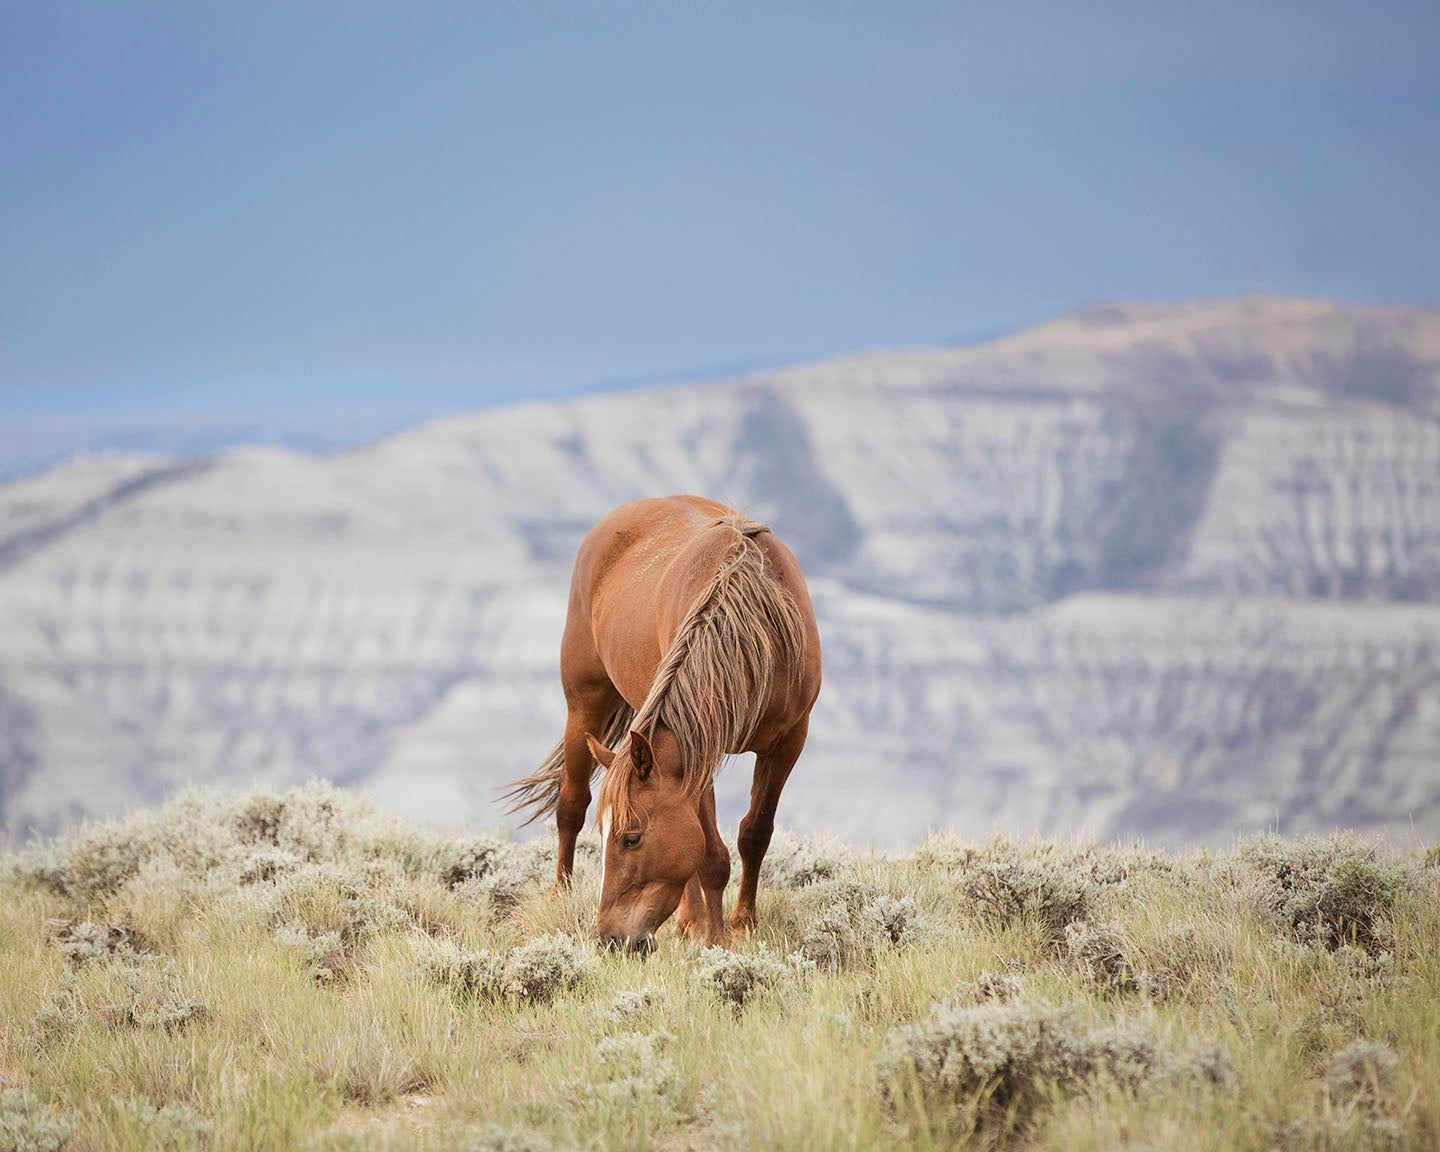 Wild Mountain Graze- Color Horse Photo